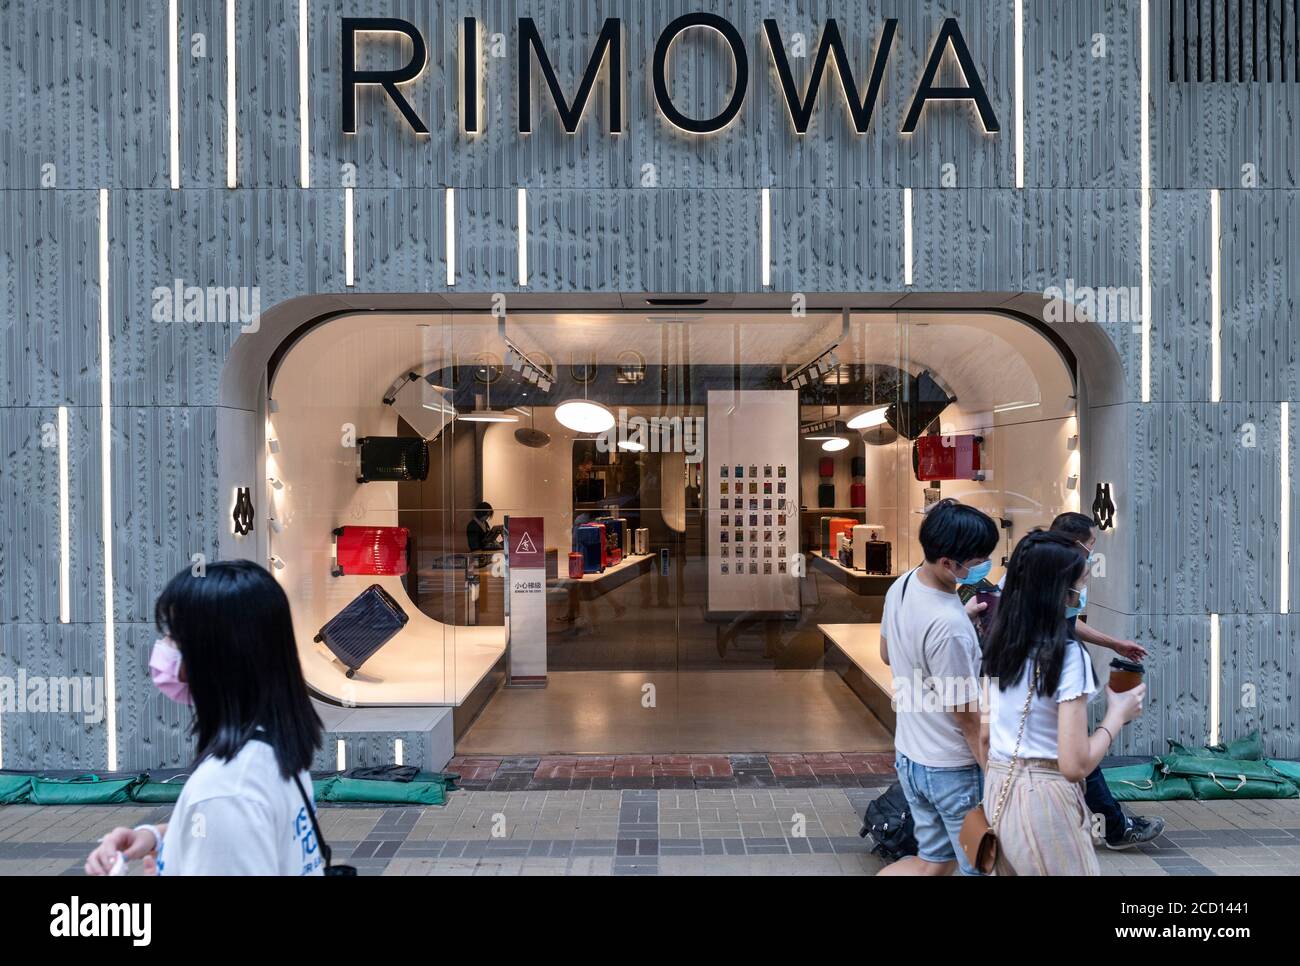 rimowa hk shop